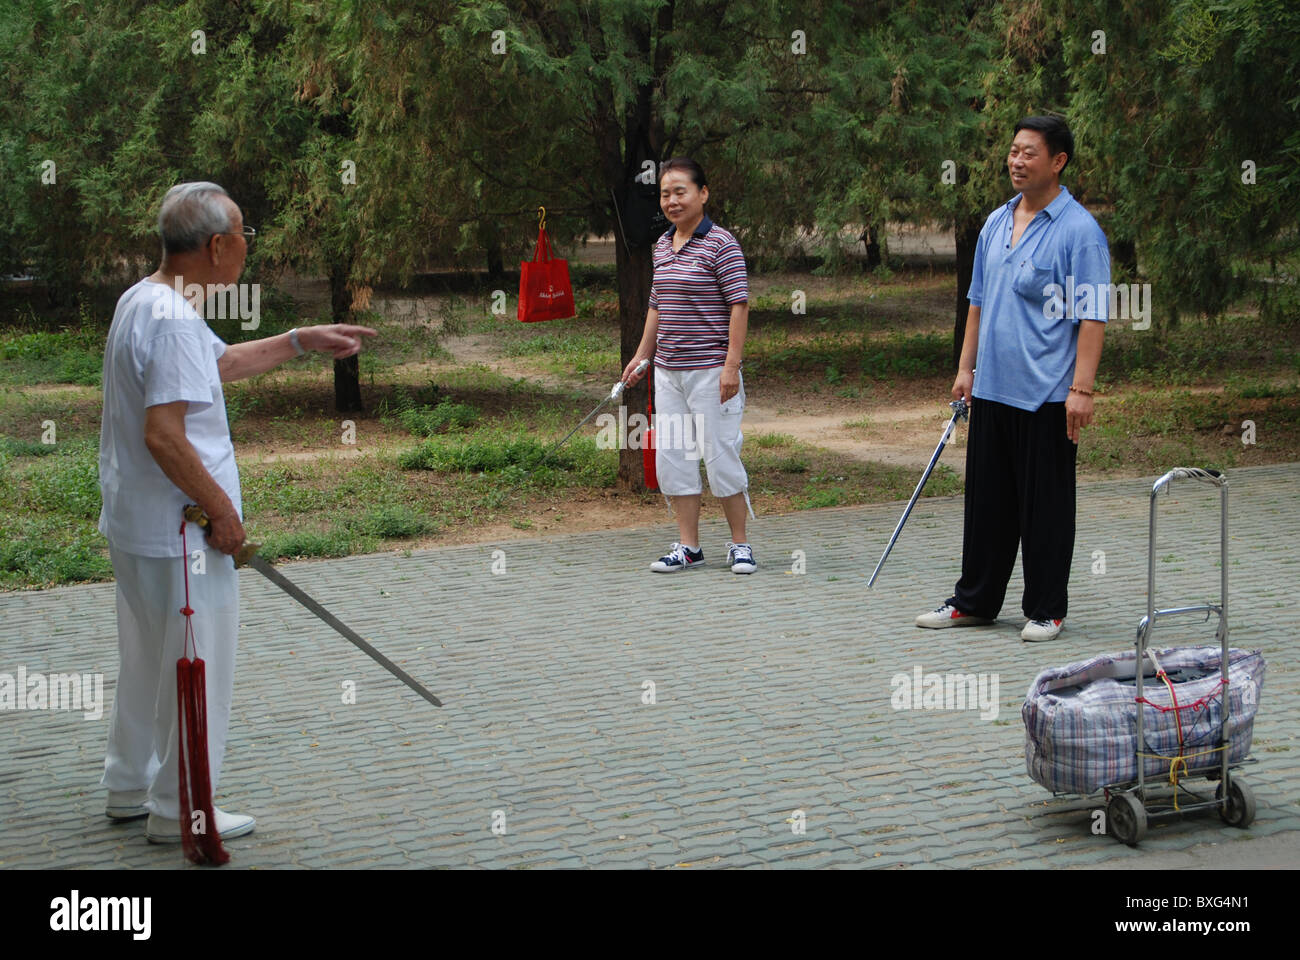 Ballo di spada, Tempio del Paradiso Park, attività mattutina, Pechino, Cina Foto Stock